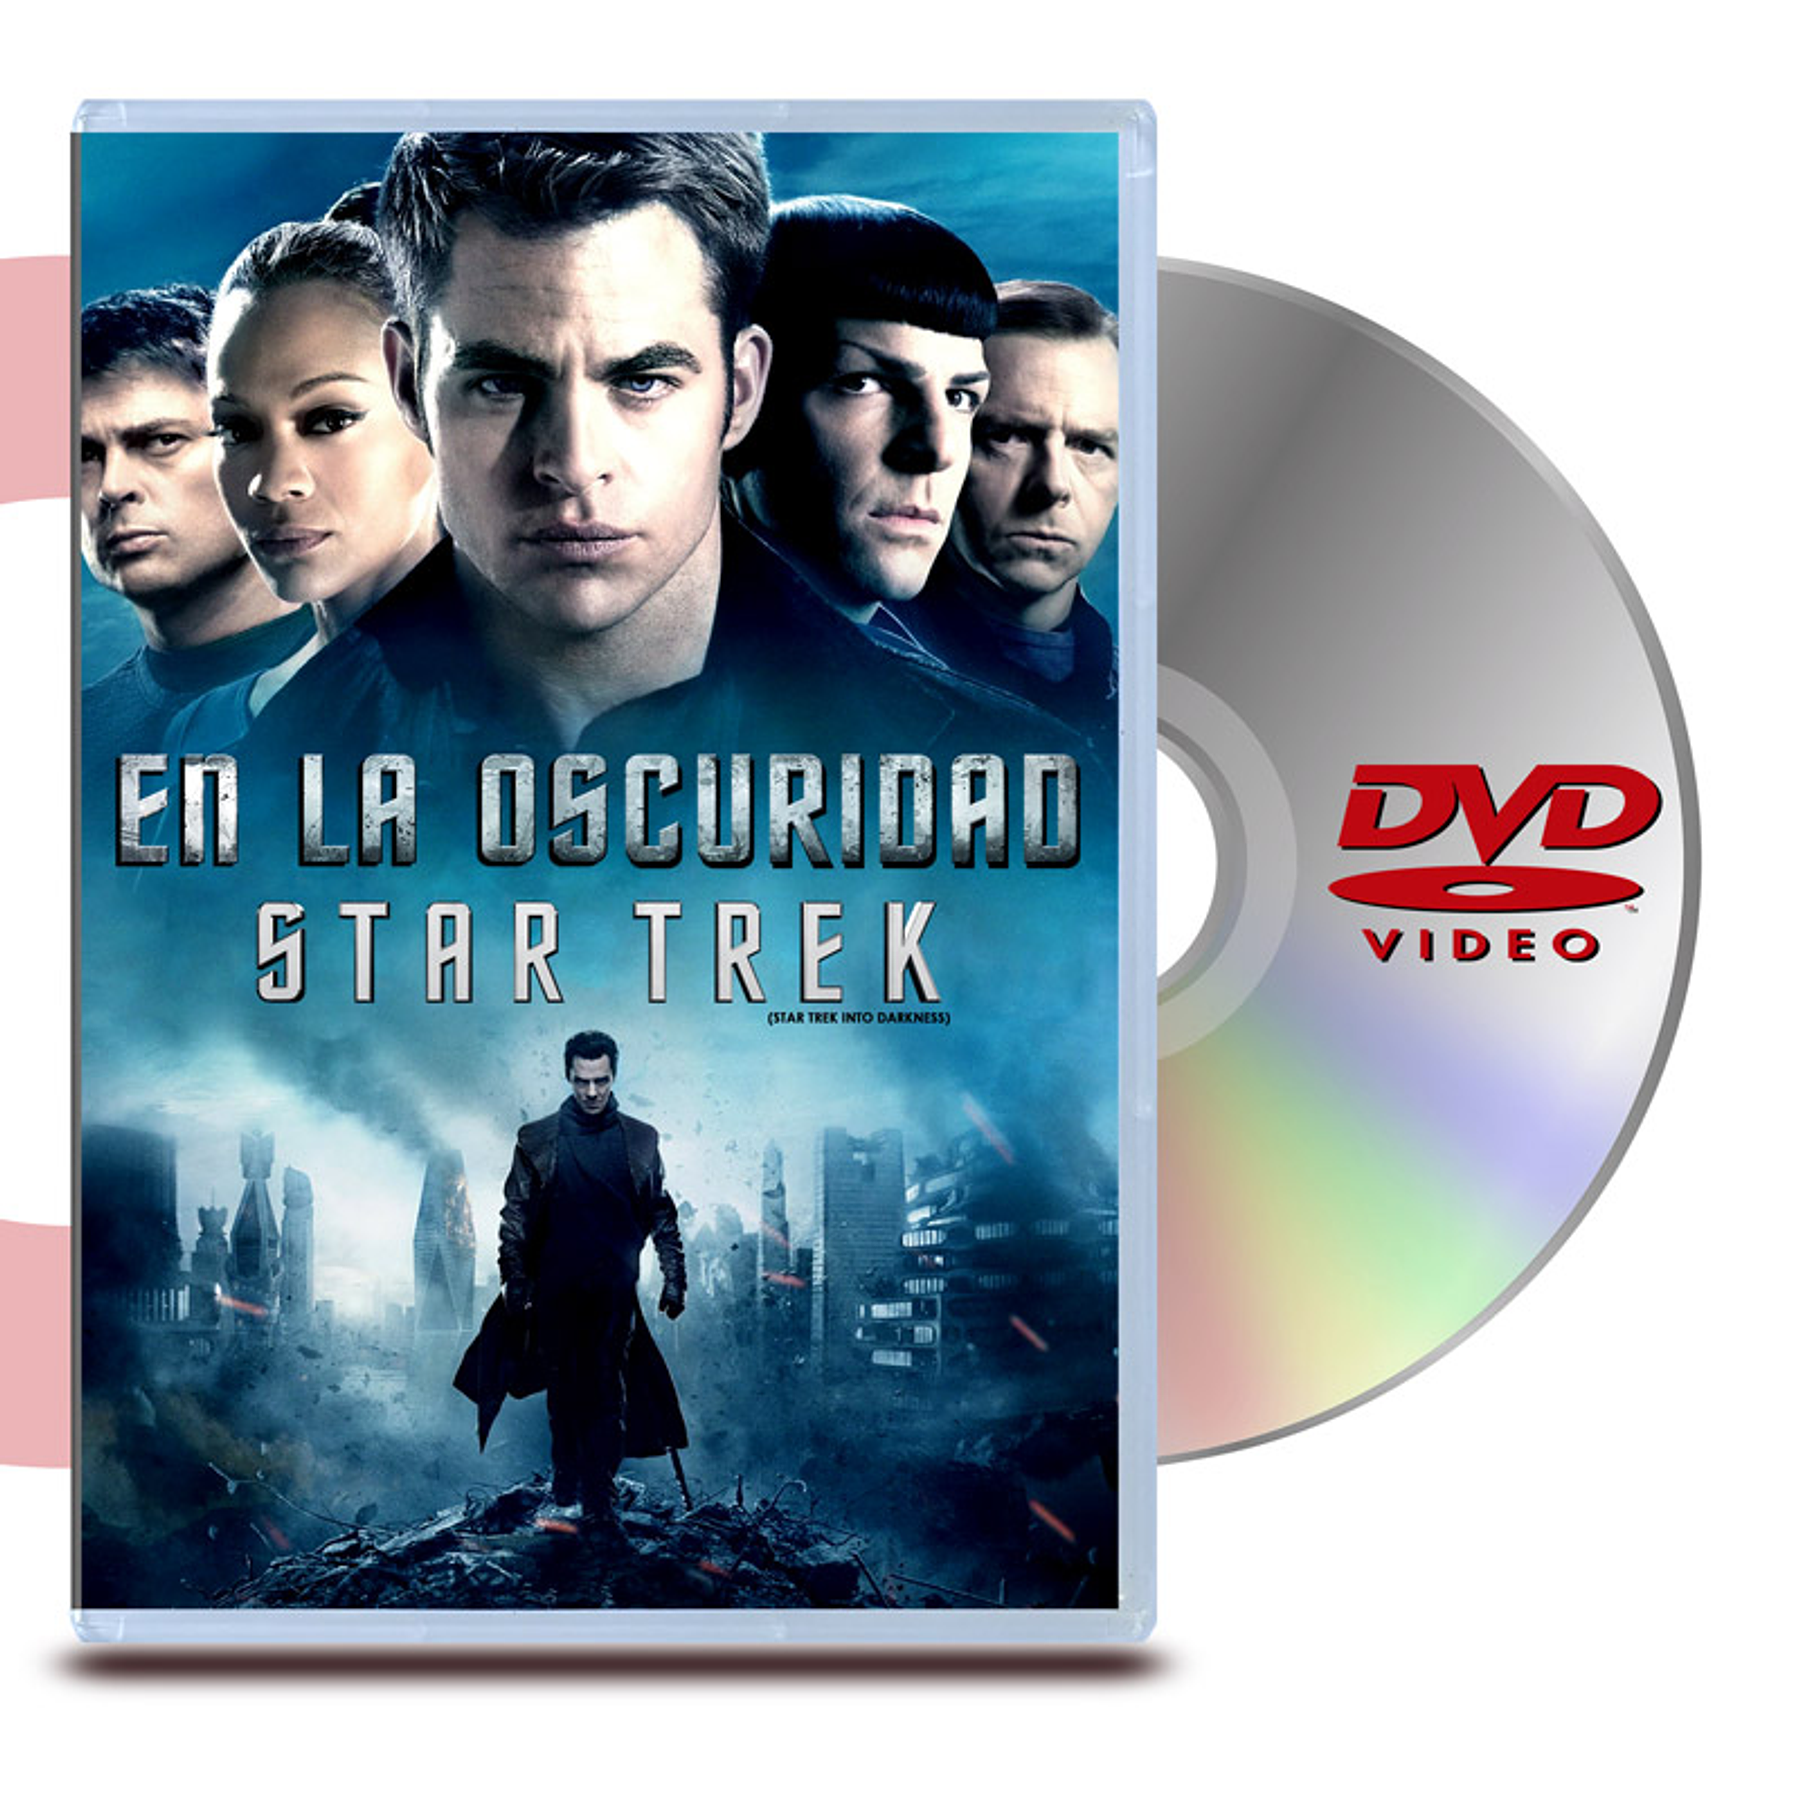 DVD STAR TREK : EN LA OSCURIDAD